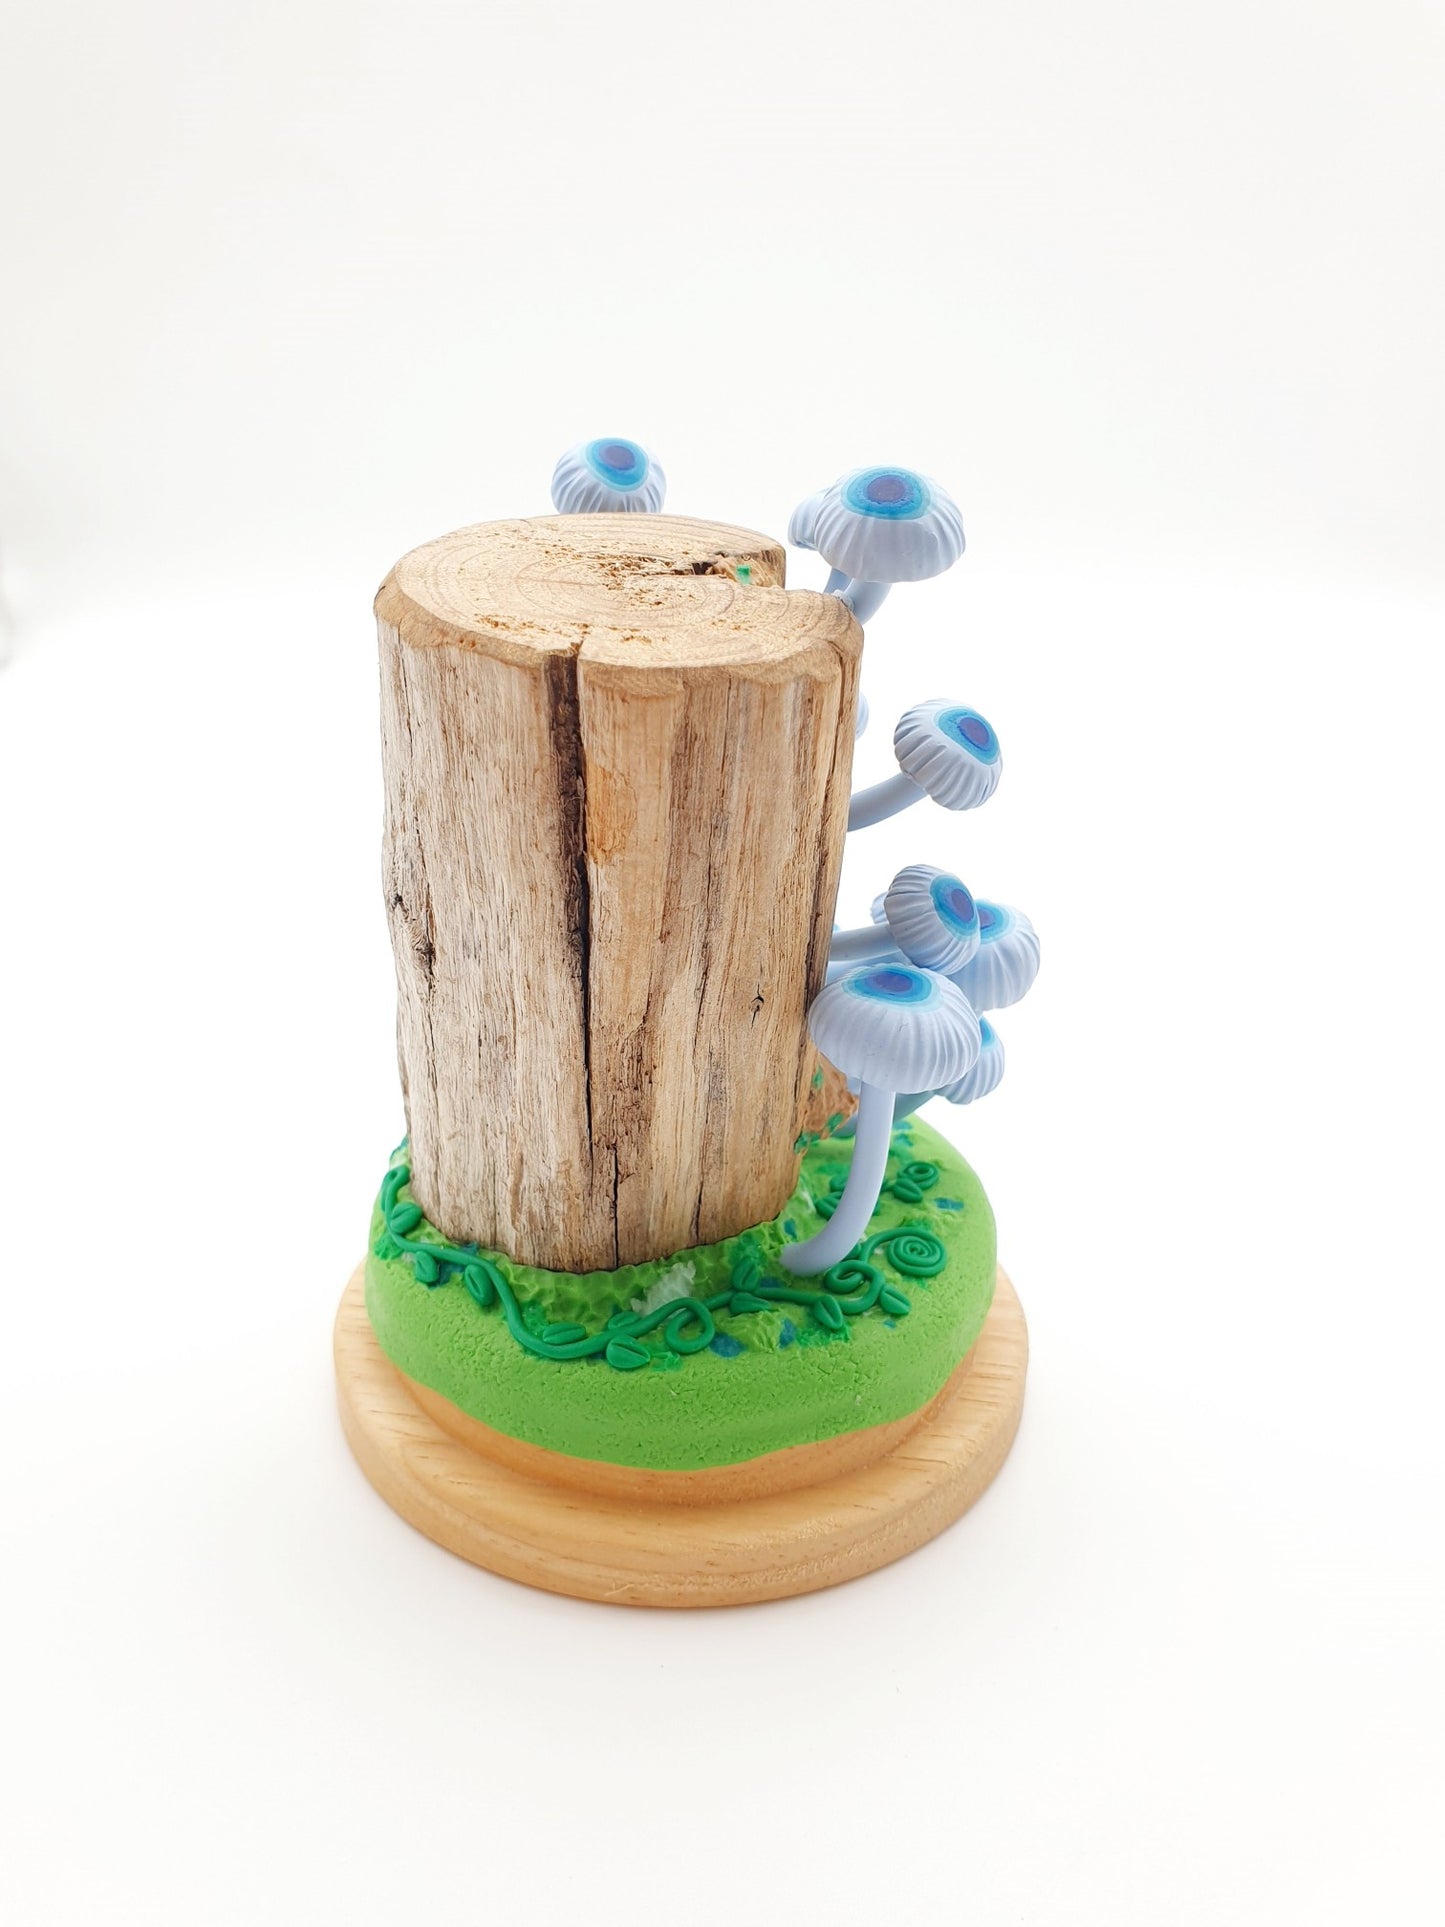 Blue mushrooms Mycena Interrupta on wood sculpture